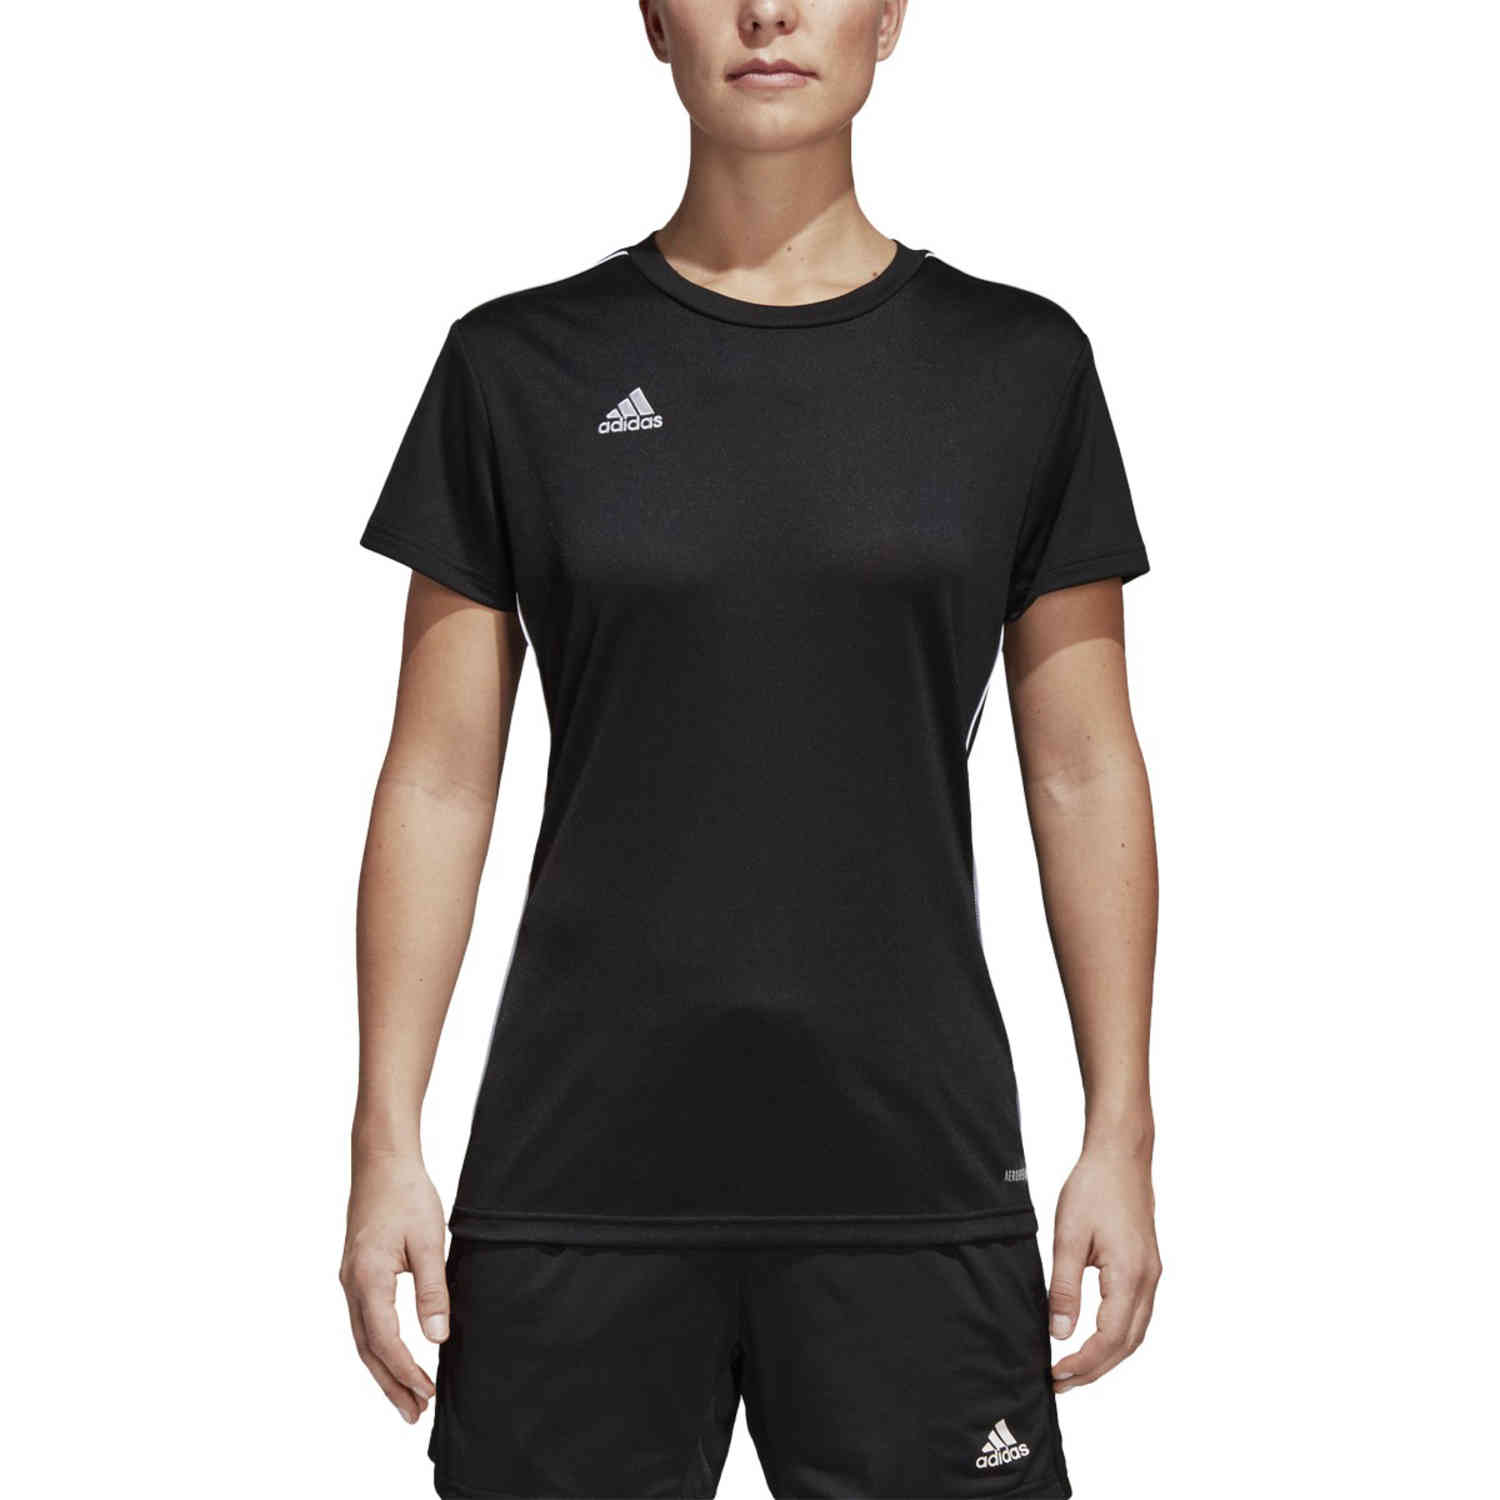 Womens adidas Core 18 Training Jersey - Black/White - SoccerPro